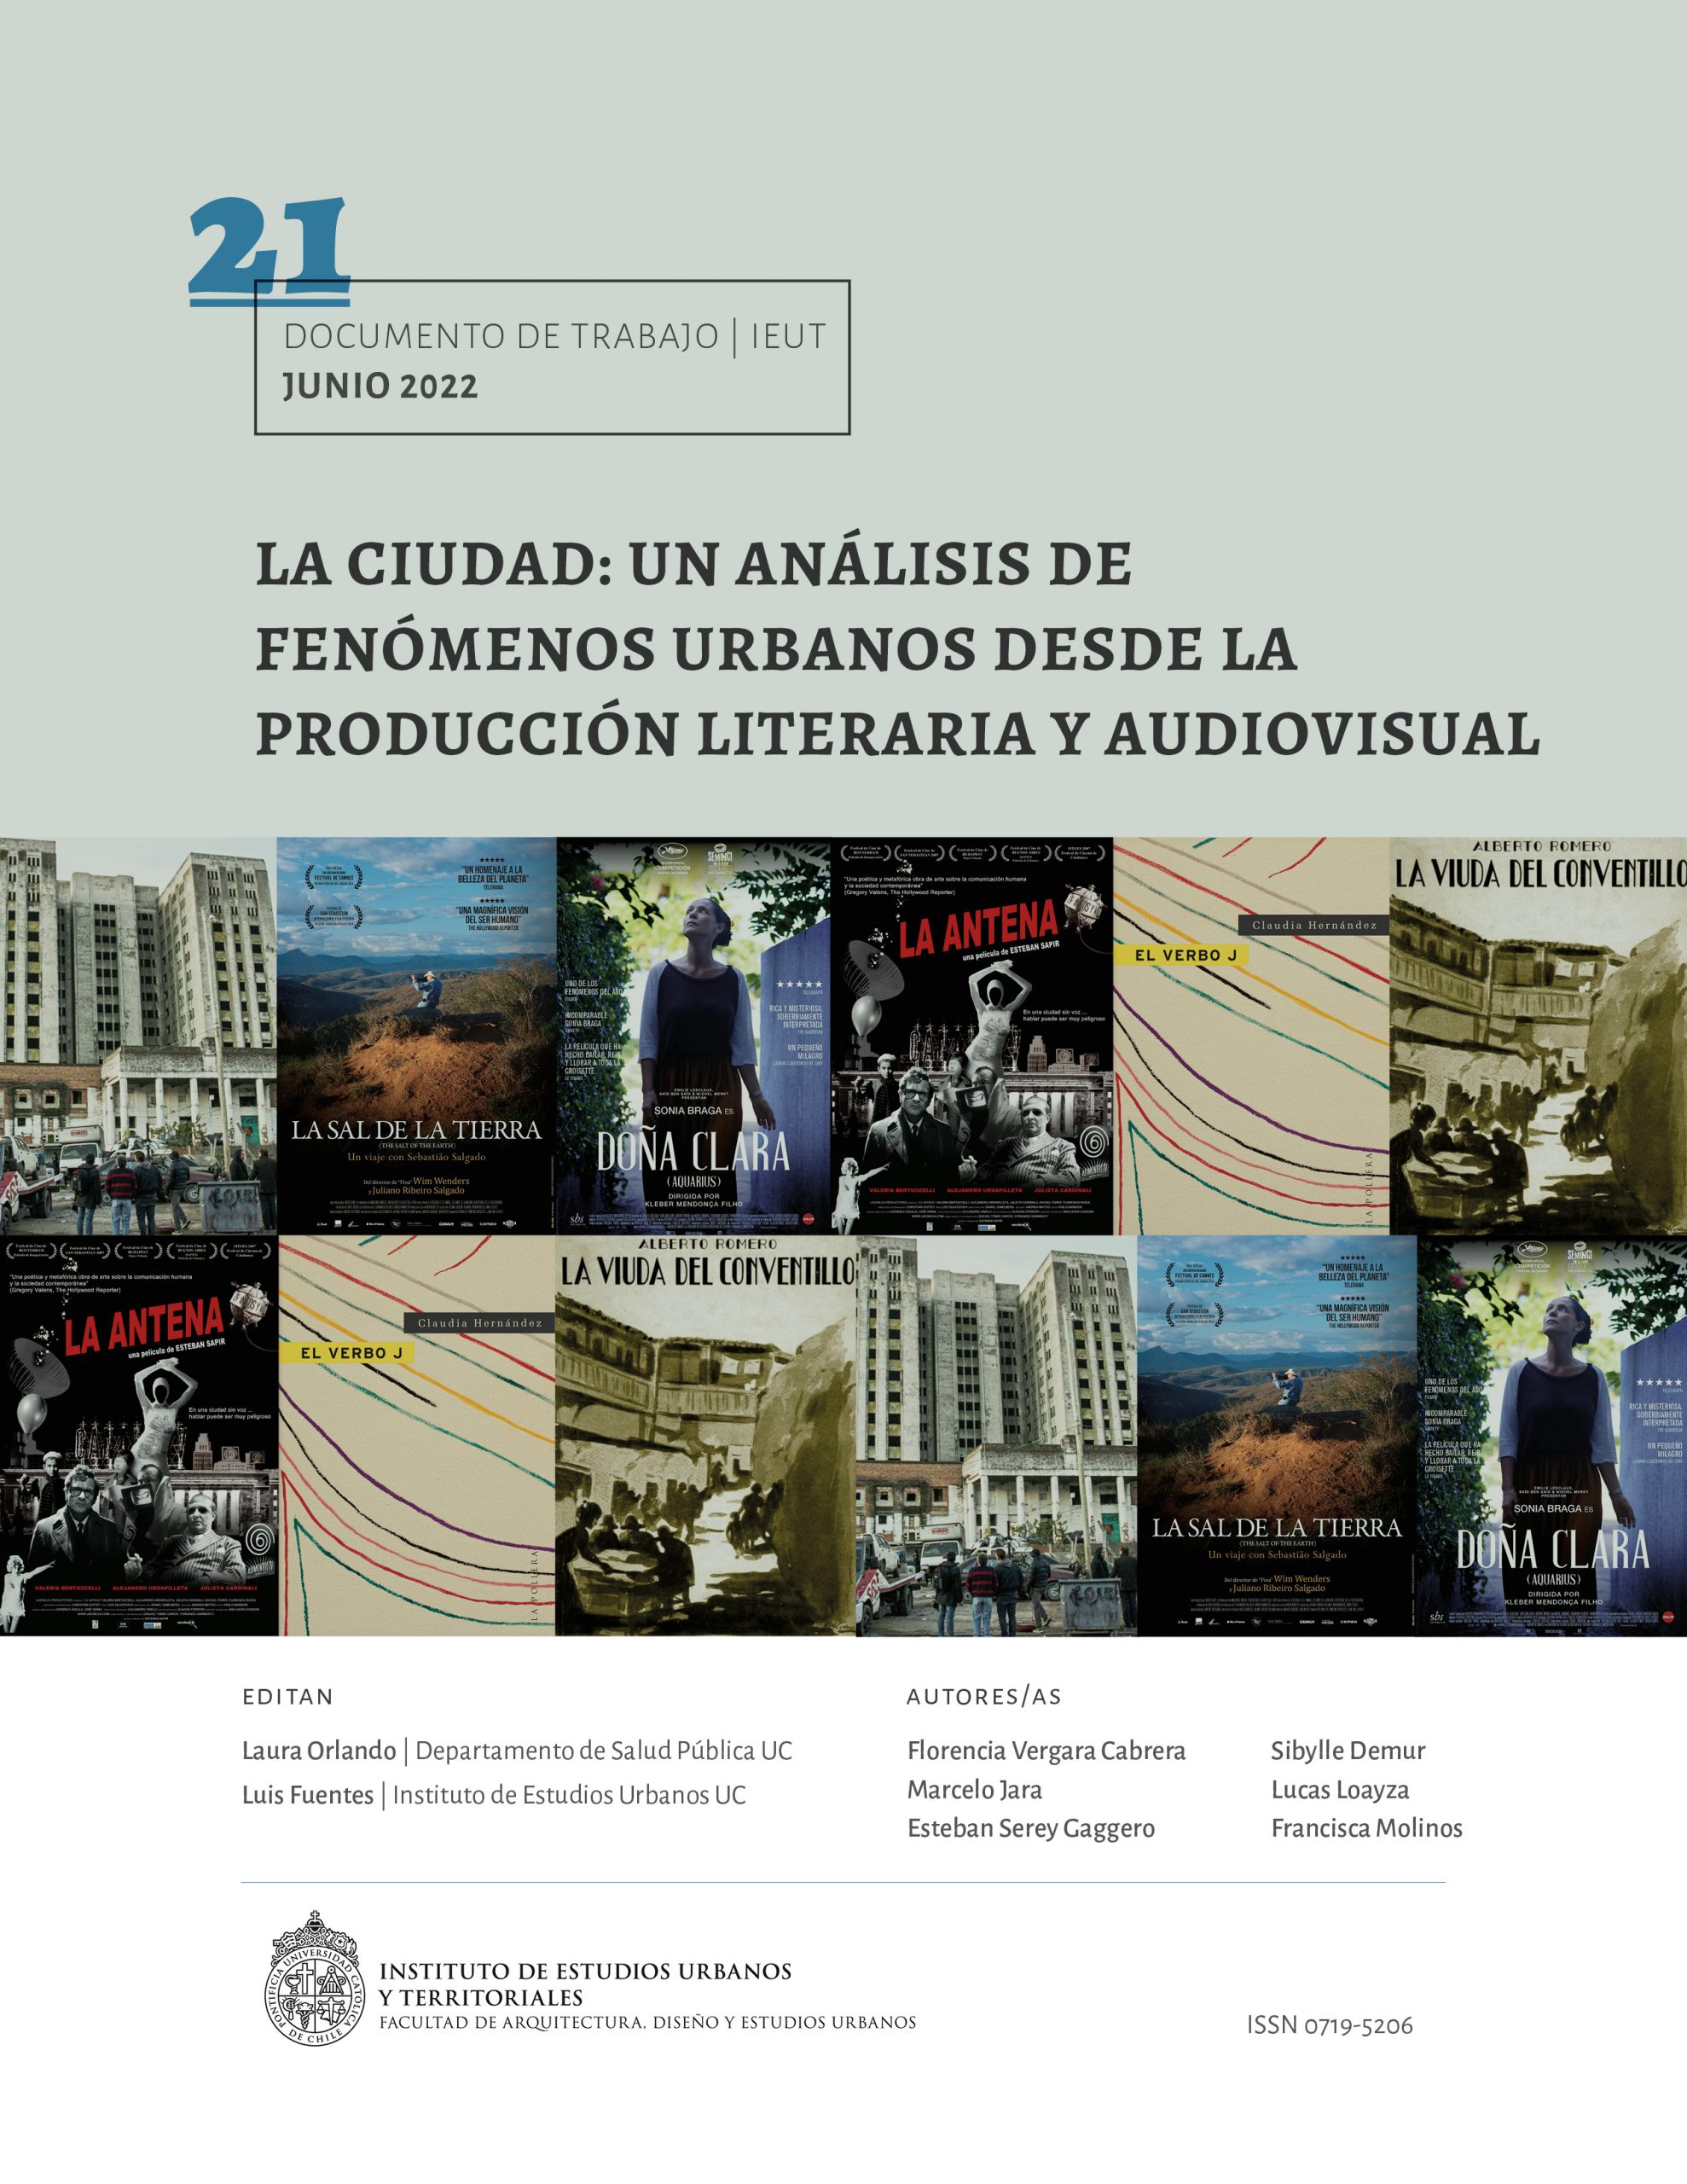 La ciudad: un análisis de fenómenos urbanos desde la producción literaria y audiovisual